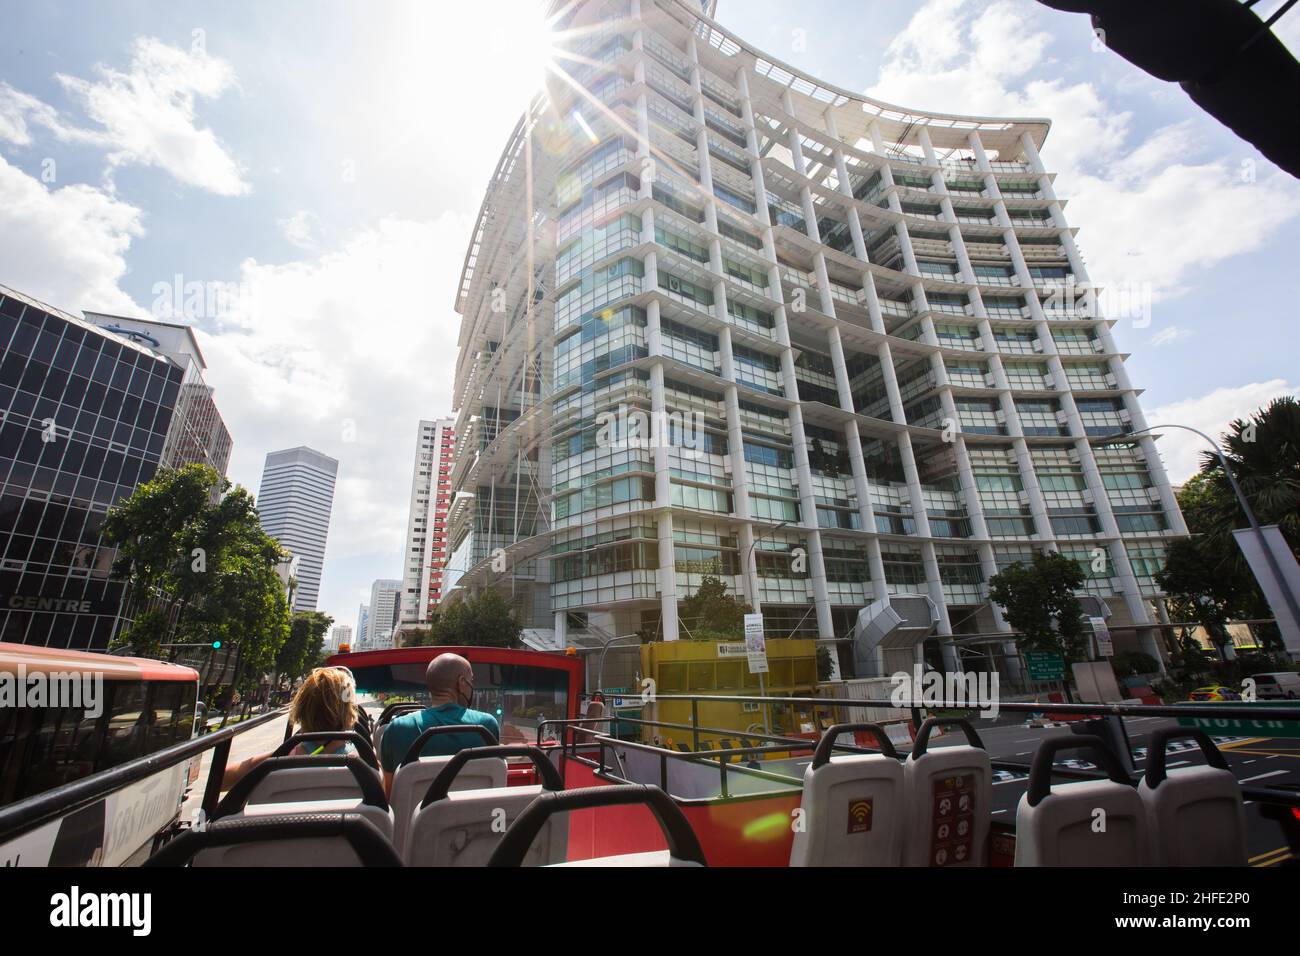 Le bus à toit ouvert peut voir toute l'architecture moderne de la Bibliothèque nationale, Singapour. Banque D'Images